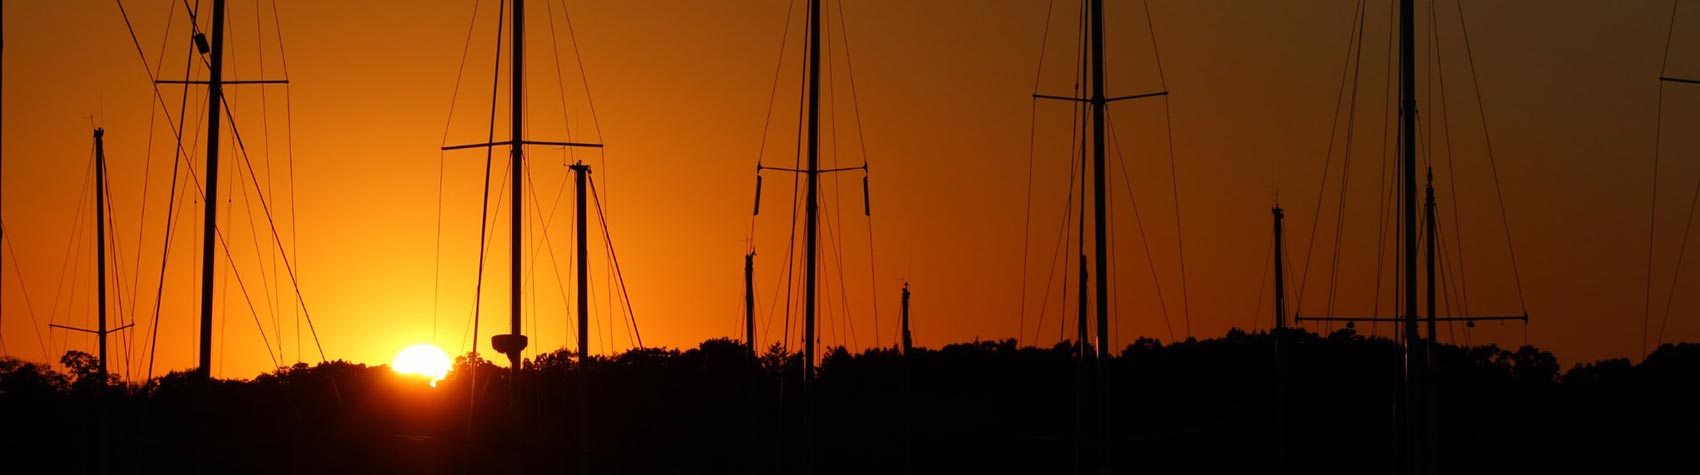 sail boats at sunset